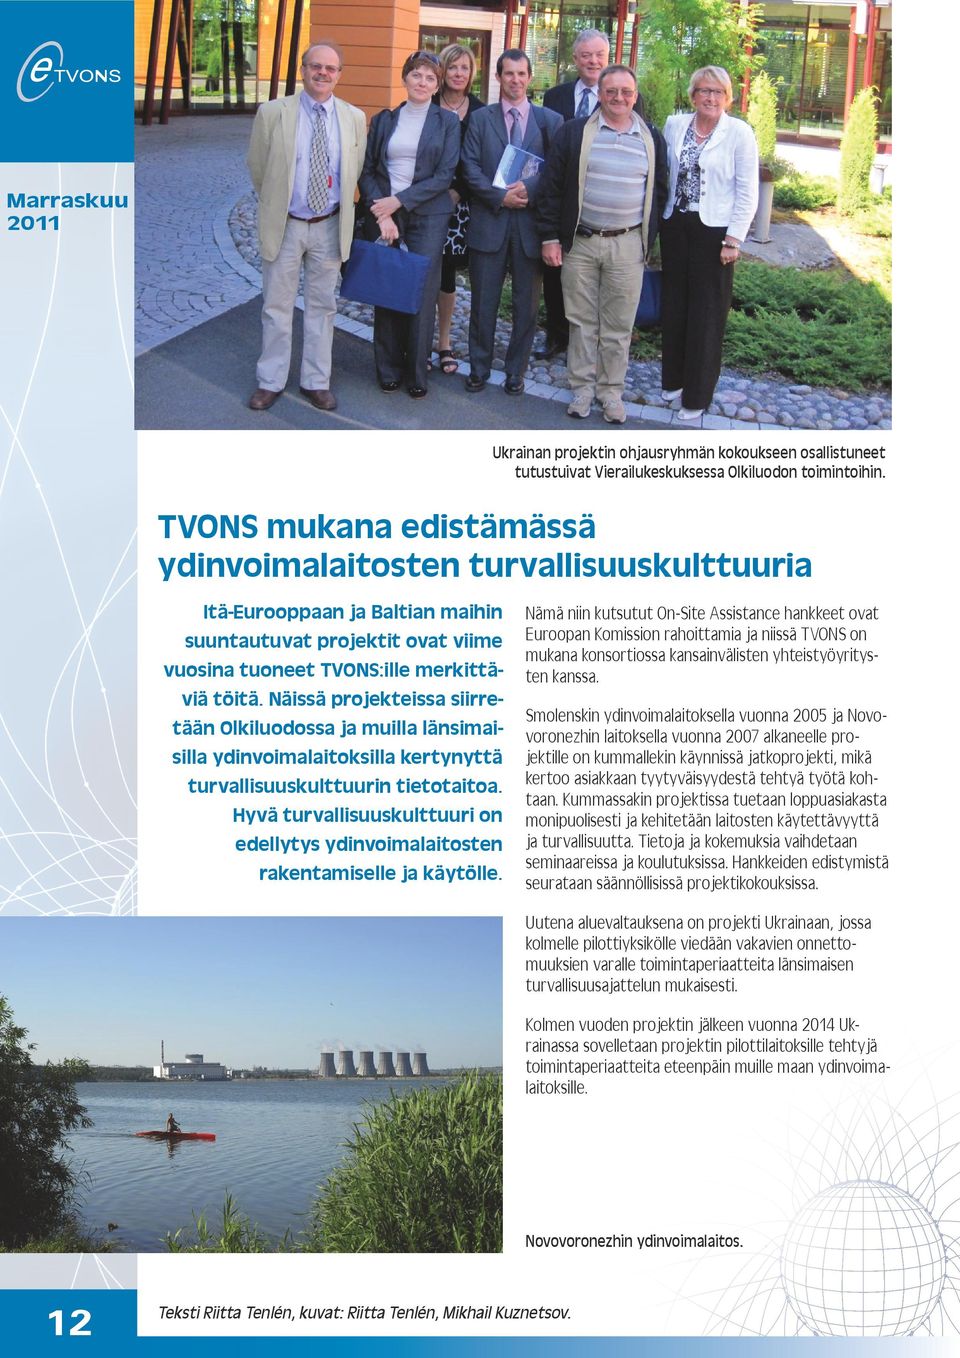 Näissä projekteissa siirretään Olkiluodossa ja muilla länsimaisilla ydinvoimalaitoksilla kertynyttä turvallisuuskulttuurin tietotaitoa.